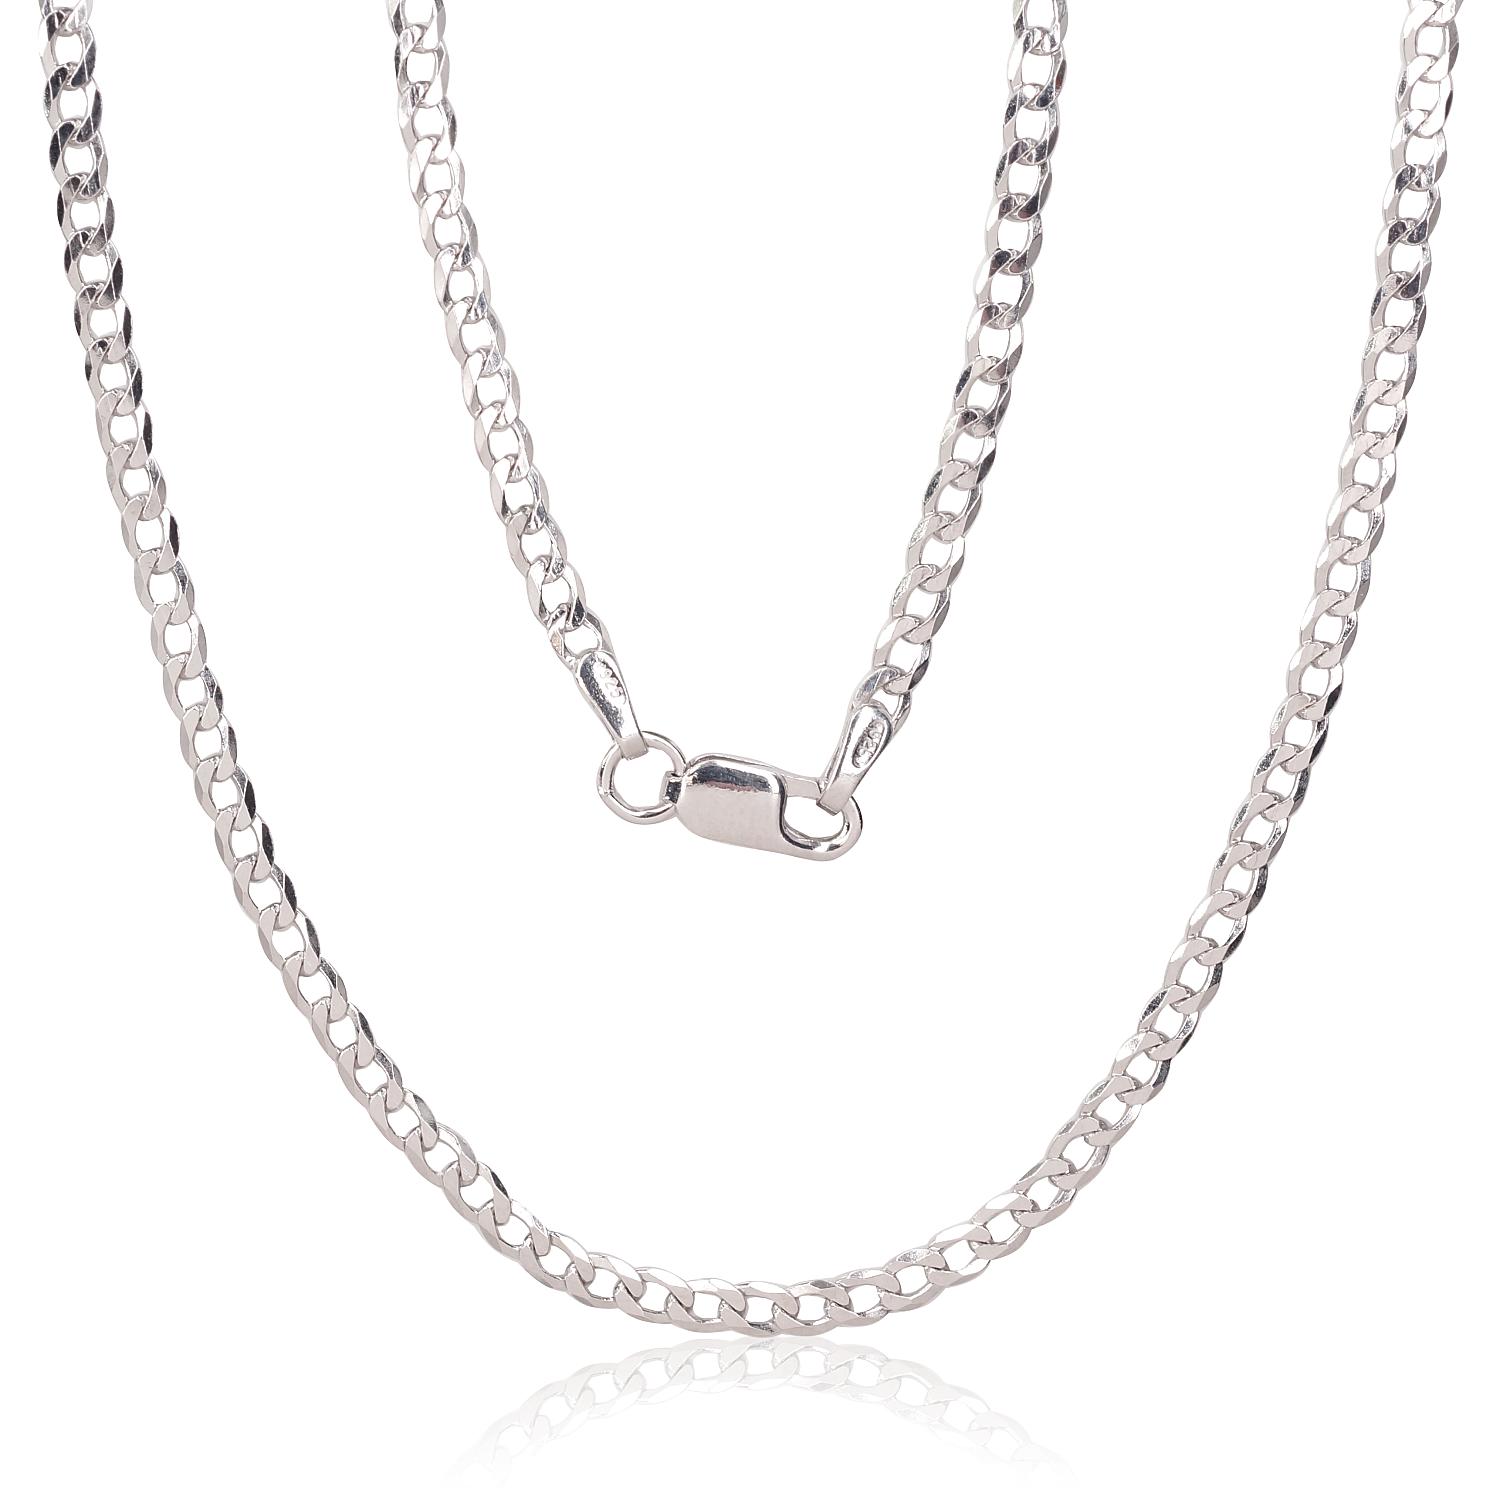 Silver chain Curb 2.5 mm, diamond cut